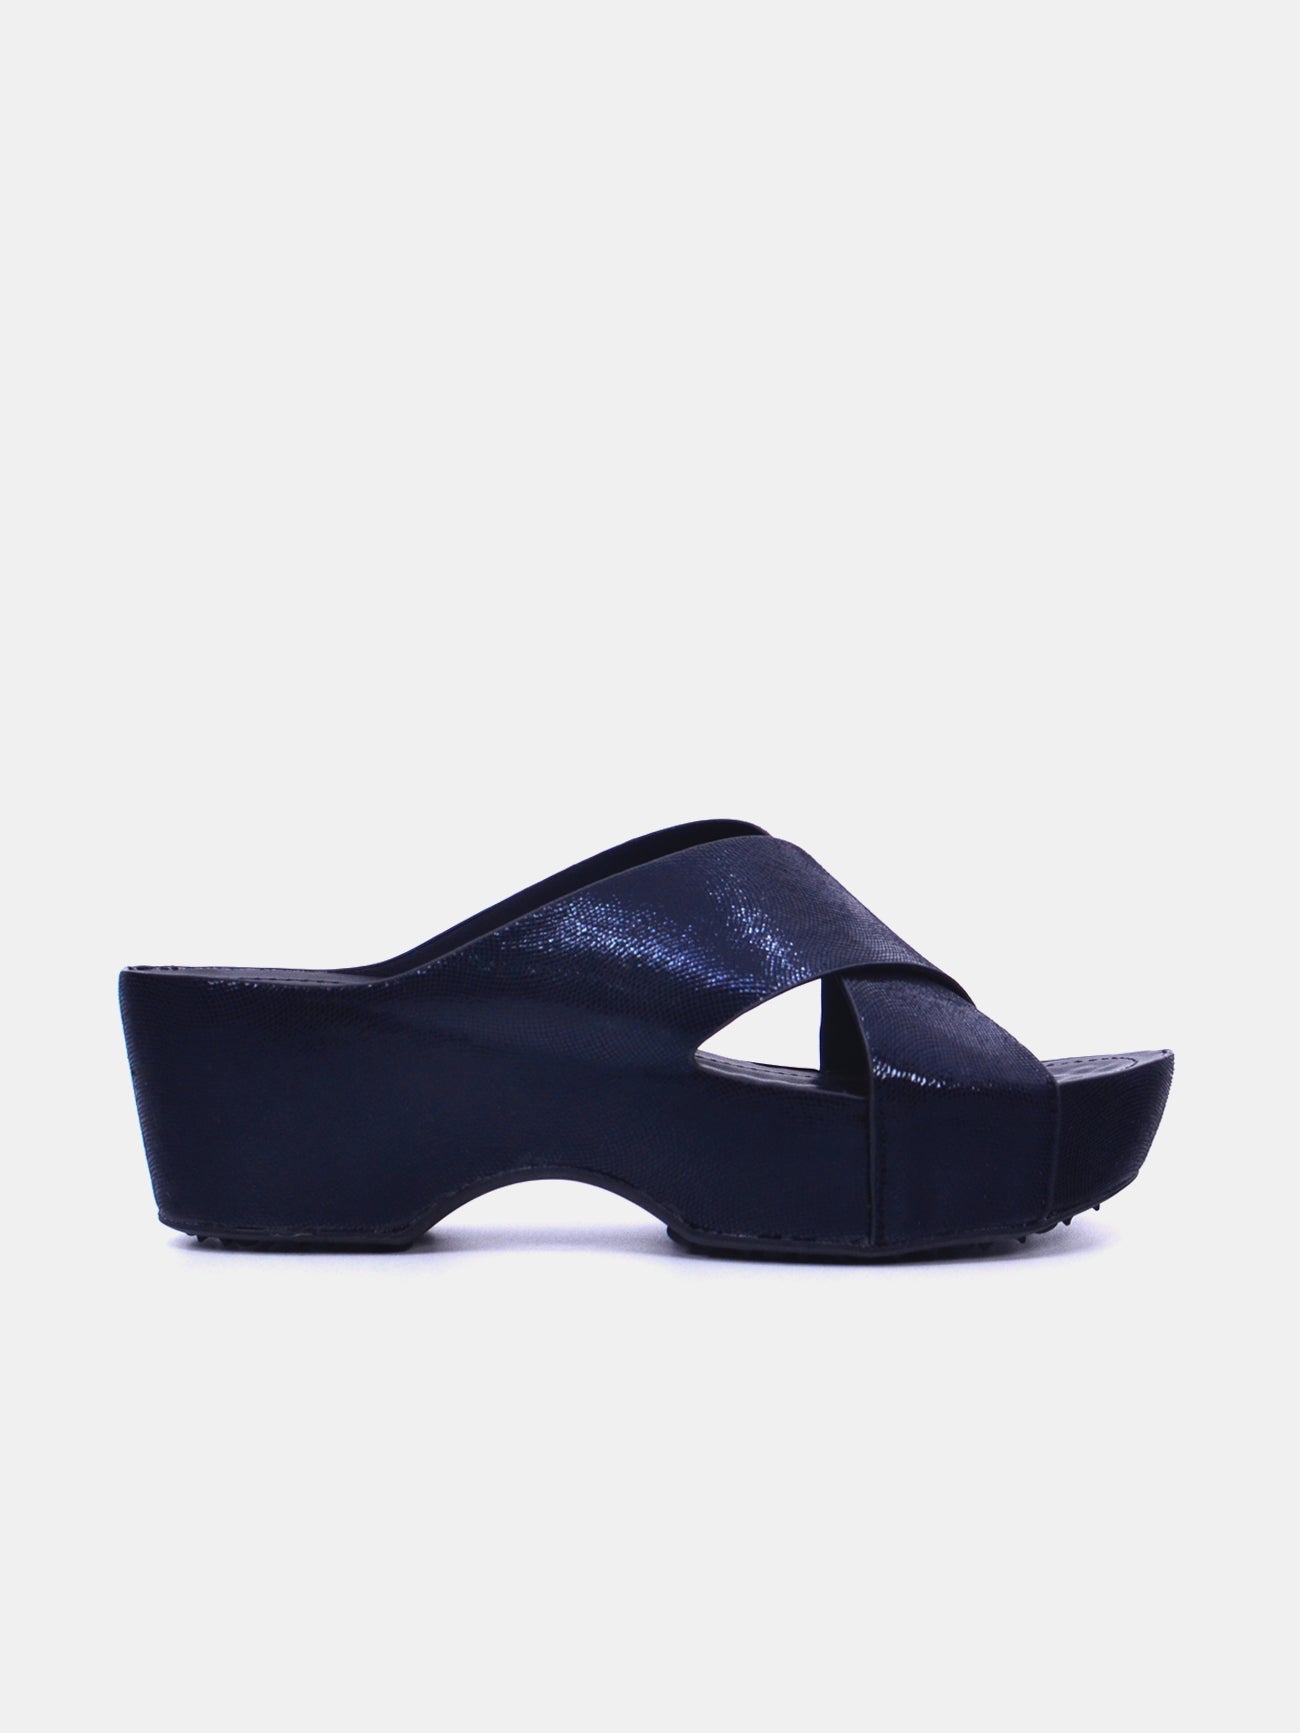 Michelle Morgan 214RJ955 Women's Wedge Sandals #color_Black